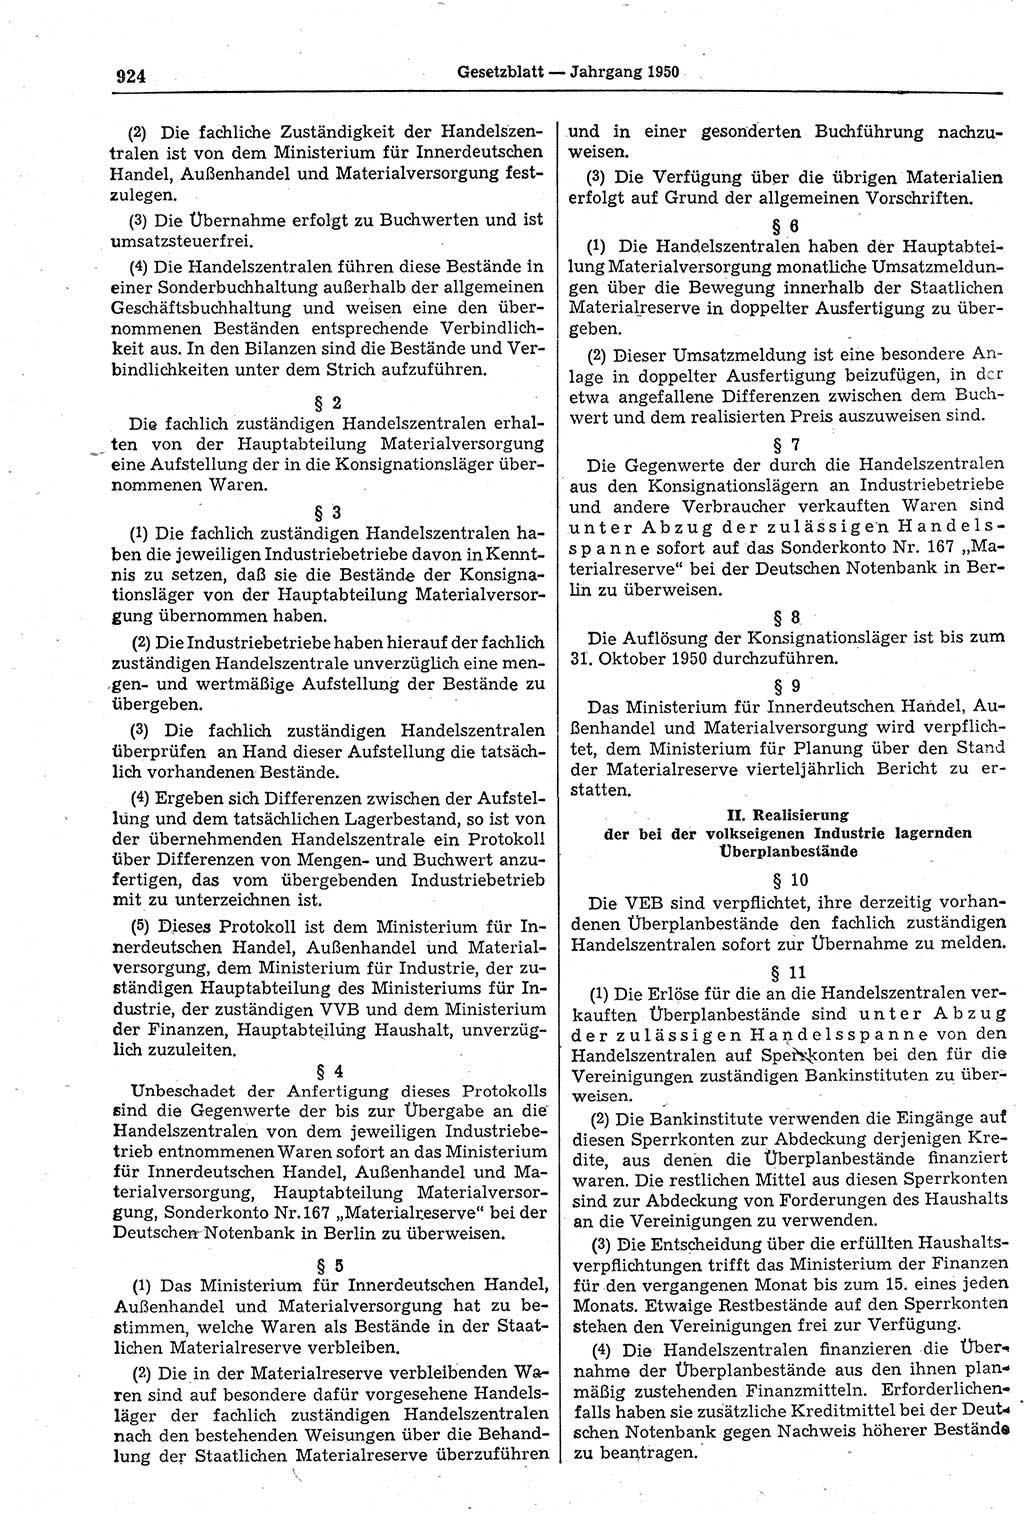 Gesetzblatt (GBl.) der Deutschen Demokratischen Republik (DDR) 1950, Seite 924 (GBl. DDR 1950, S. 924)